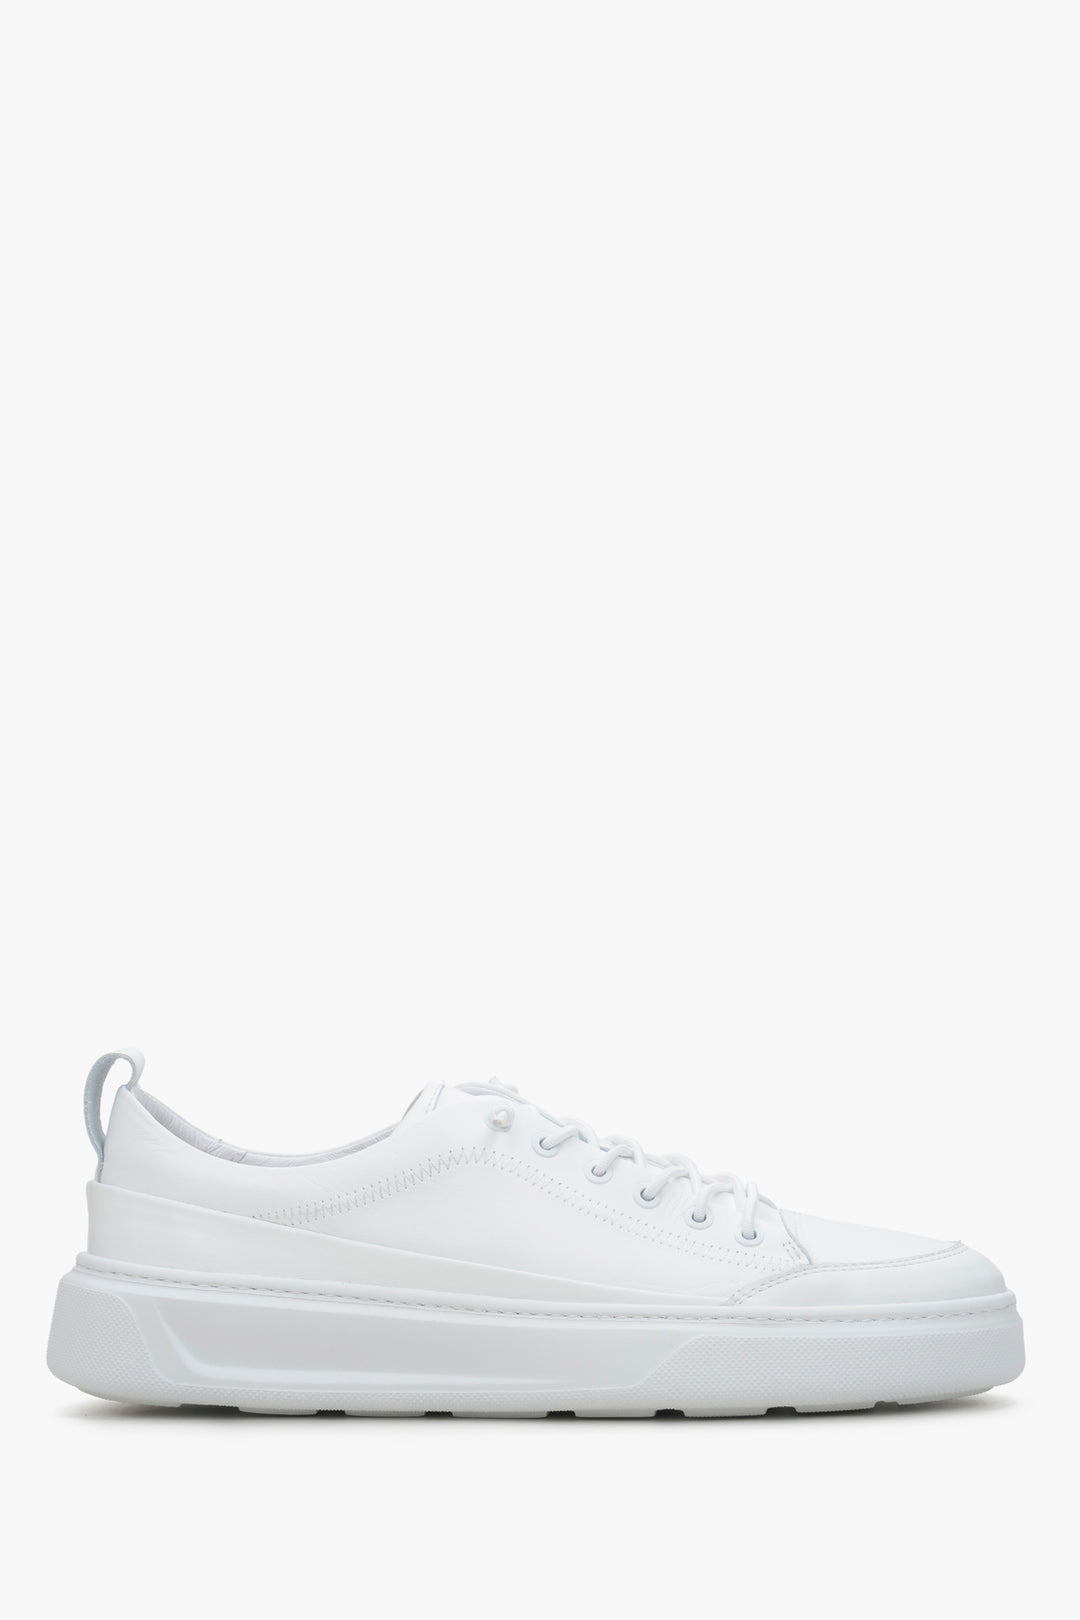 Estro men's leather sneakers in white colour - shoe profile.